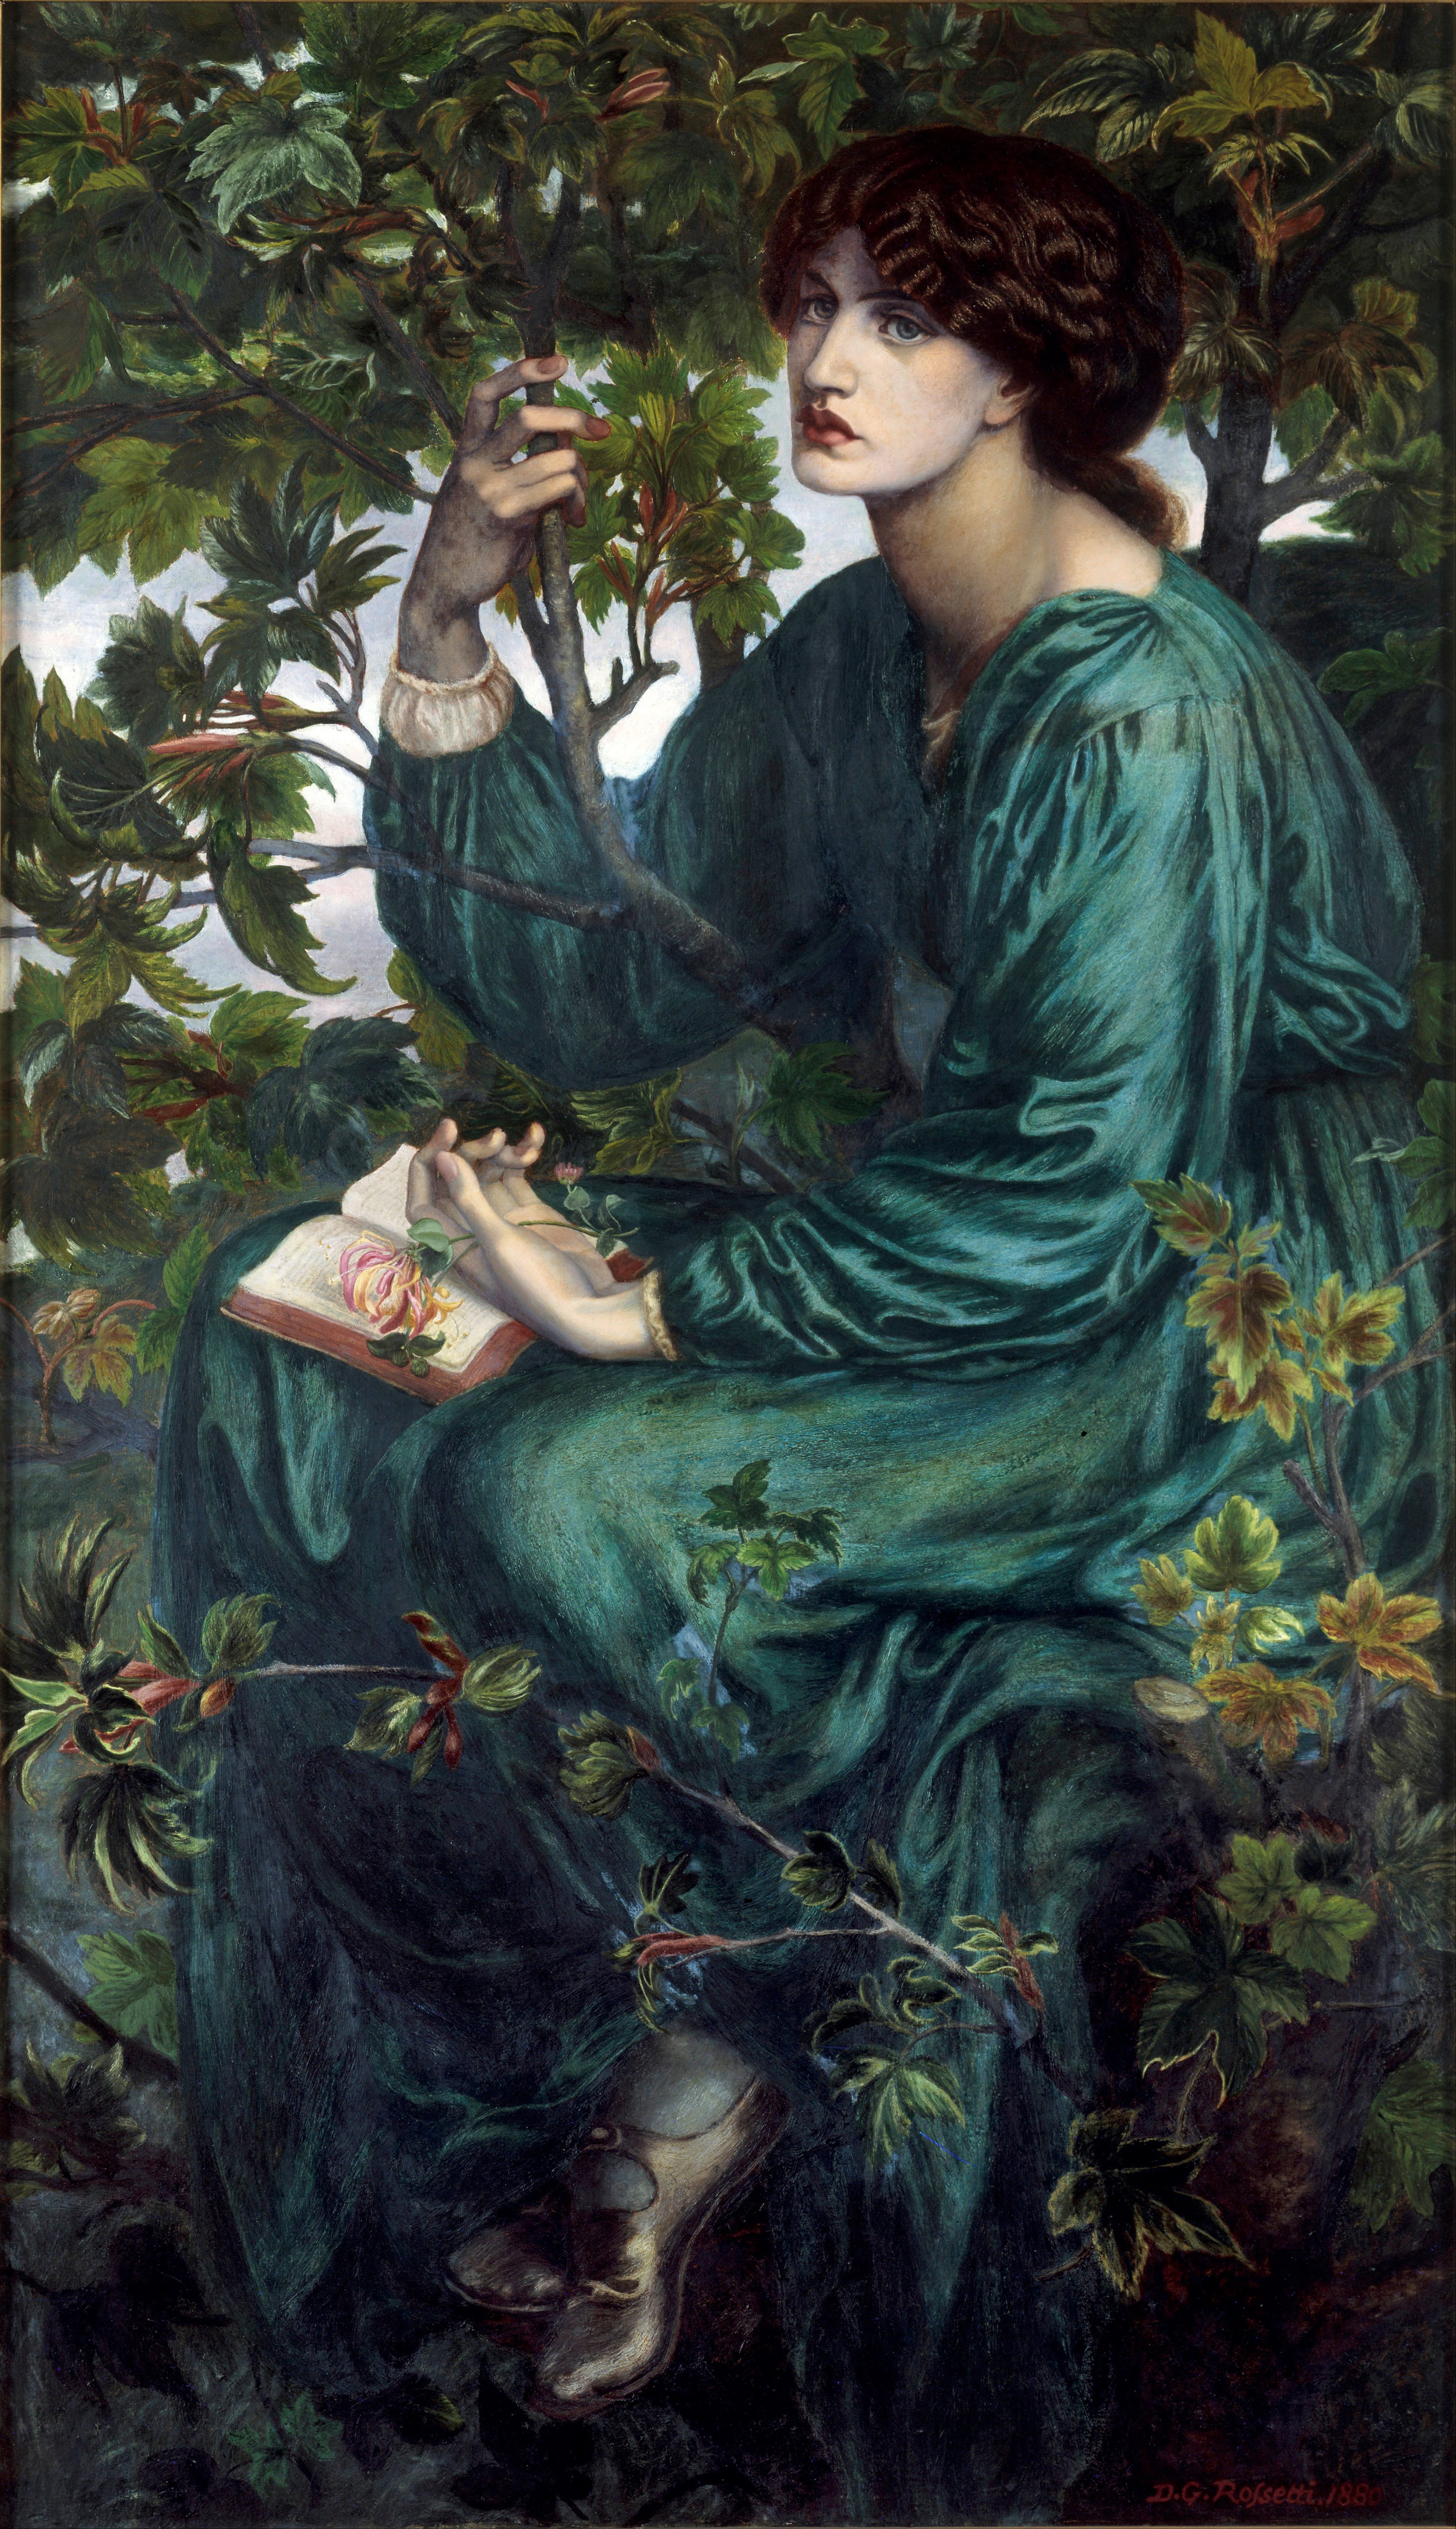 Ονειροπόληση by Ντάντε Γκάμπριελ Ροσέτι - 1880 - 158,7 x 92,7 εκ.  